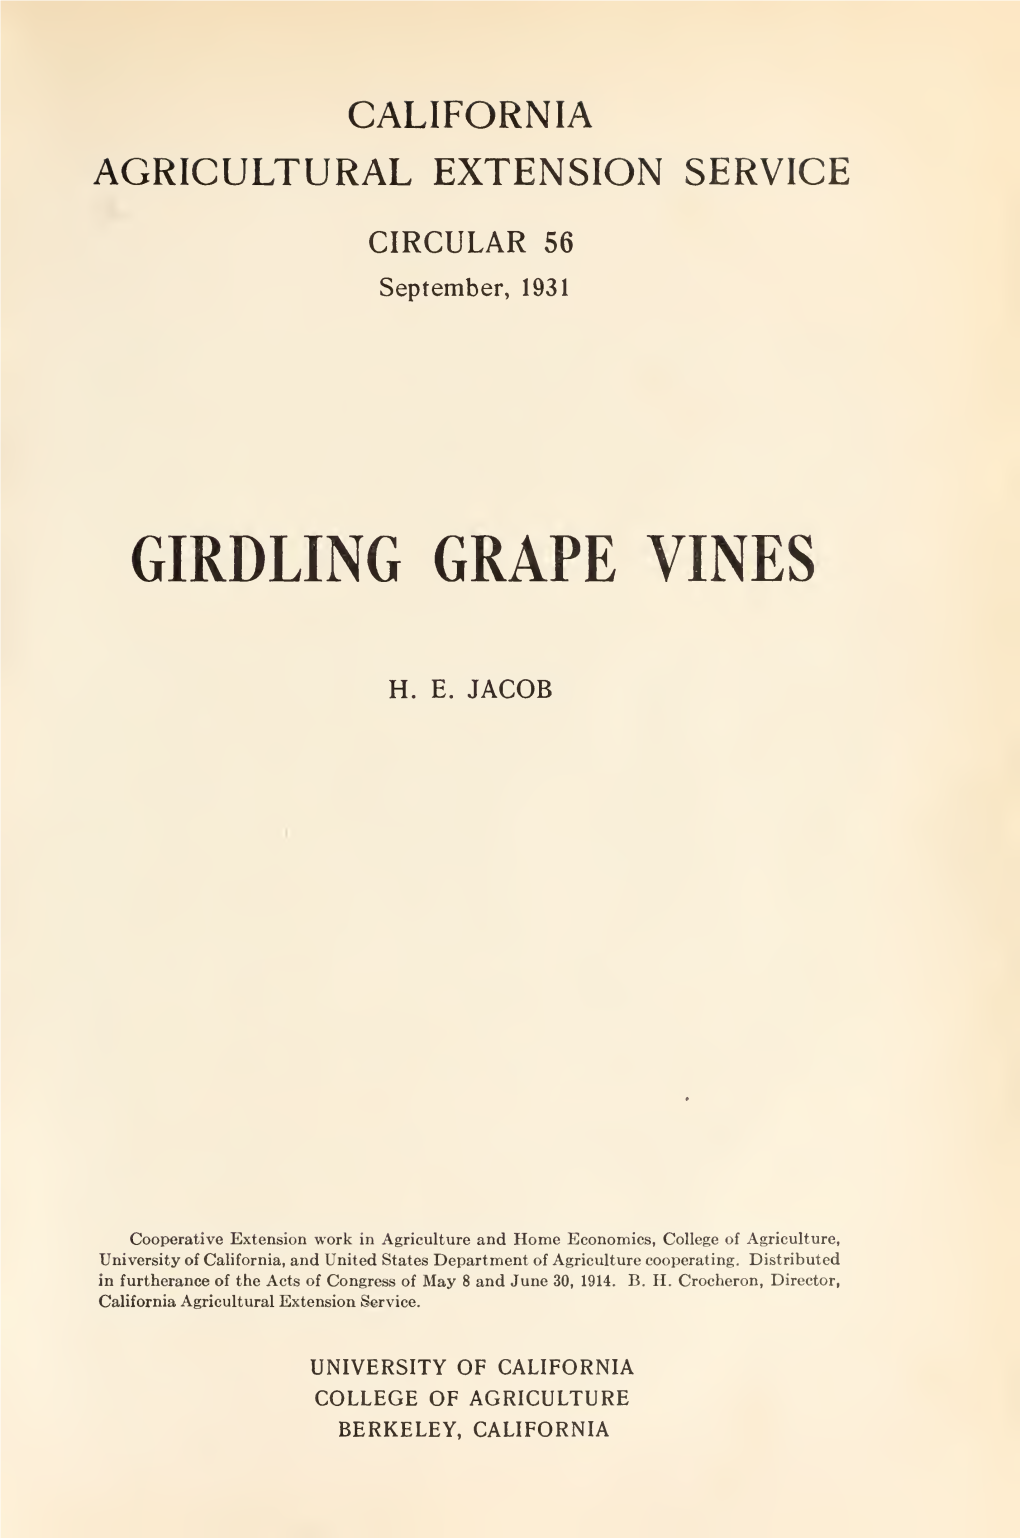 Girdling Grape Vines